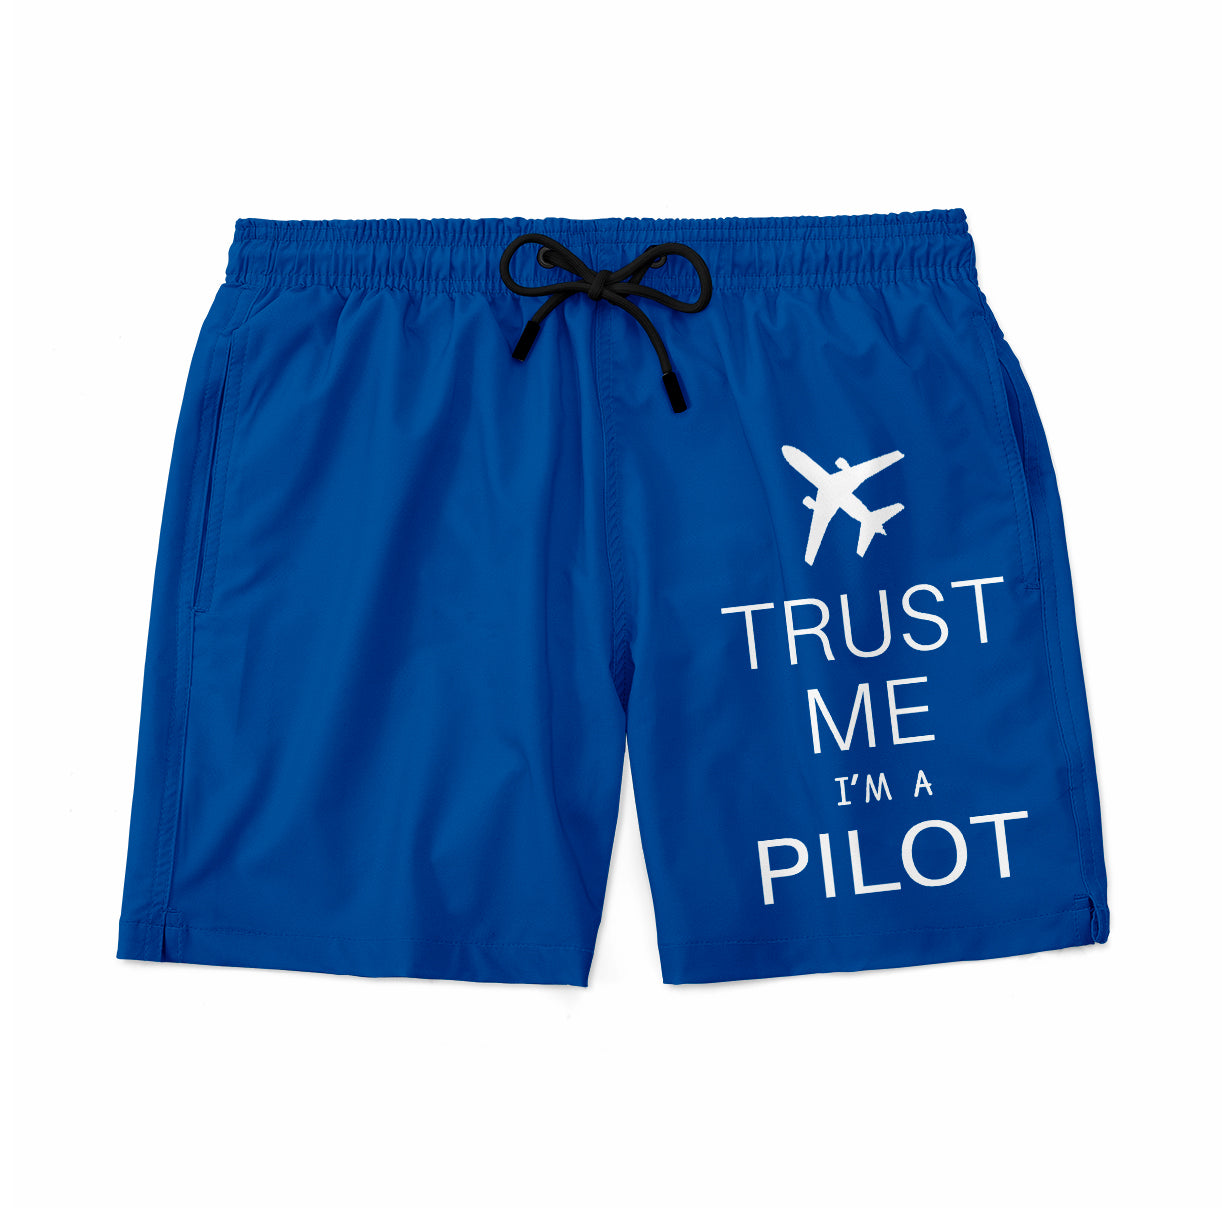 Trust Me I'm a Pilot 2 Designed Swim Trunks & Shorts